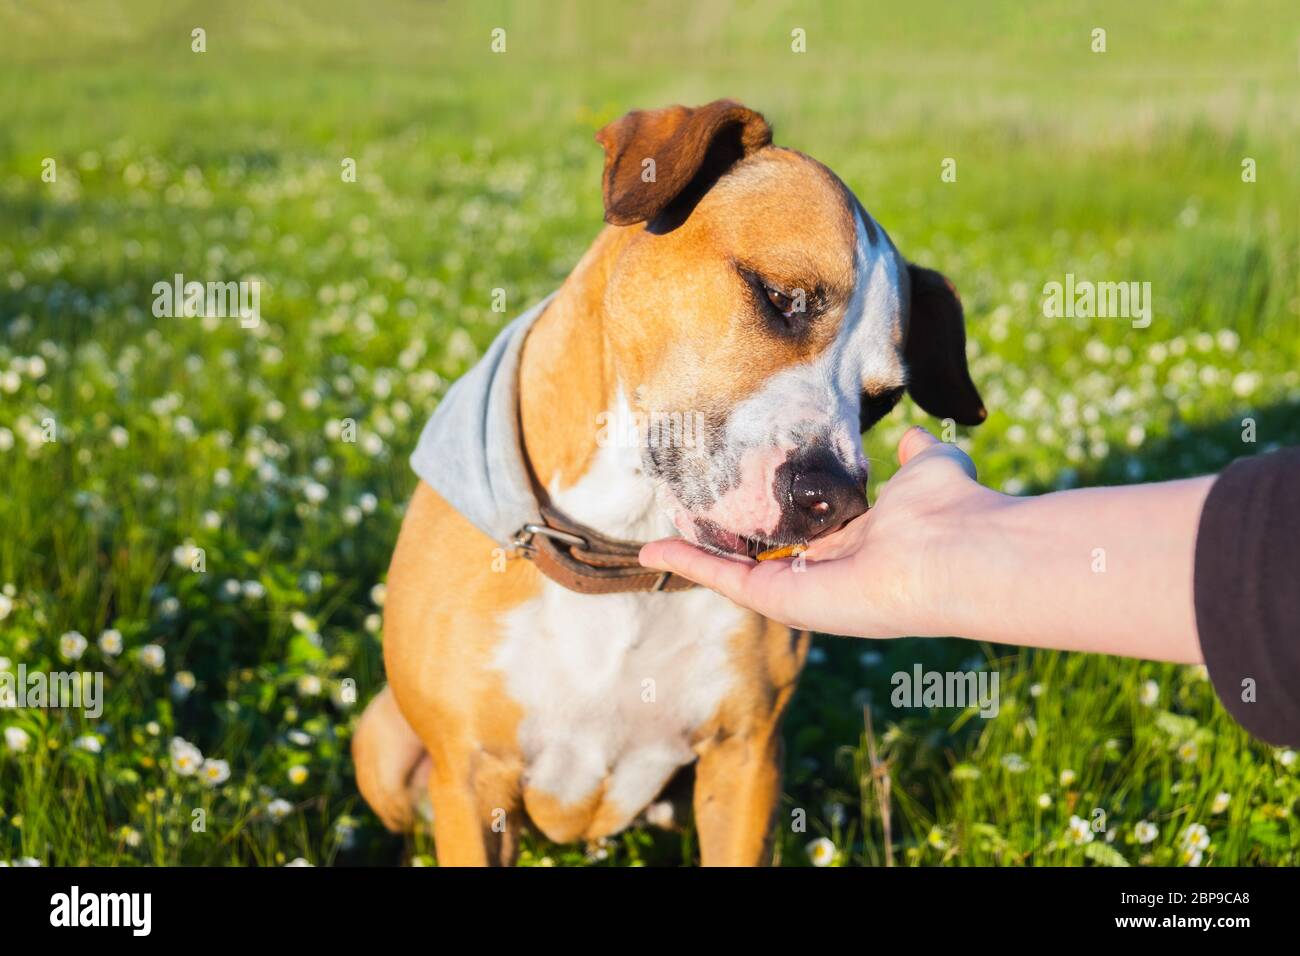 Regalare un piacere a un cane all'aperto. Mano umana che dà cibo ad un cucciolo in campo verde, in tarda primavera o estate e scena di luce solare sera Foto Stock